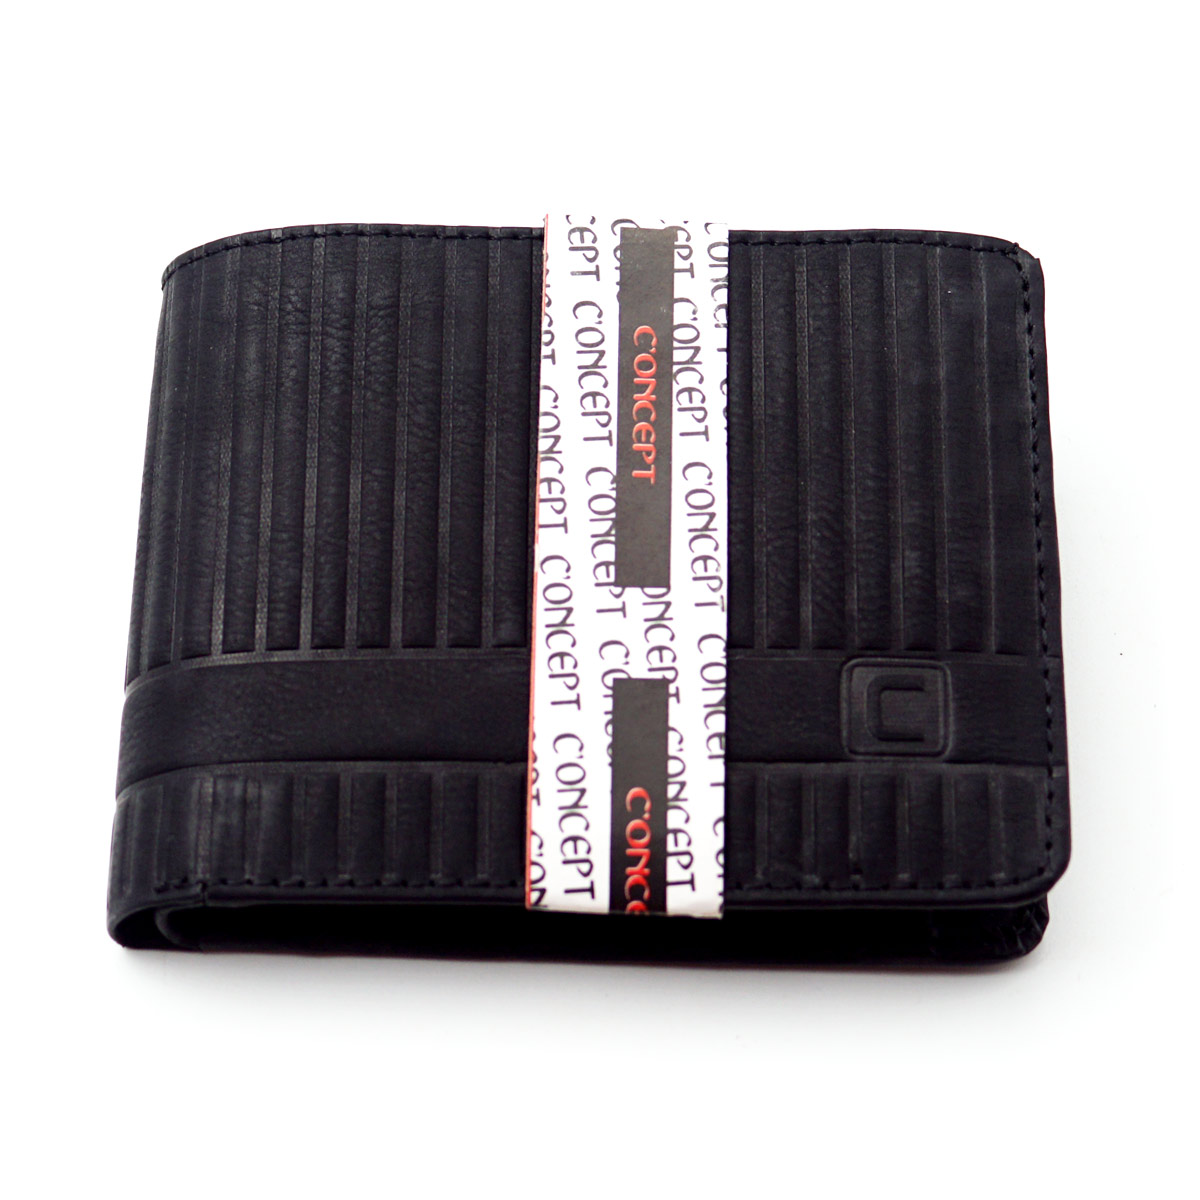 Concept Black Color Strip Design Leather Purse SKU 65106